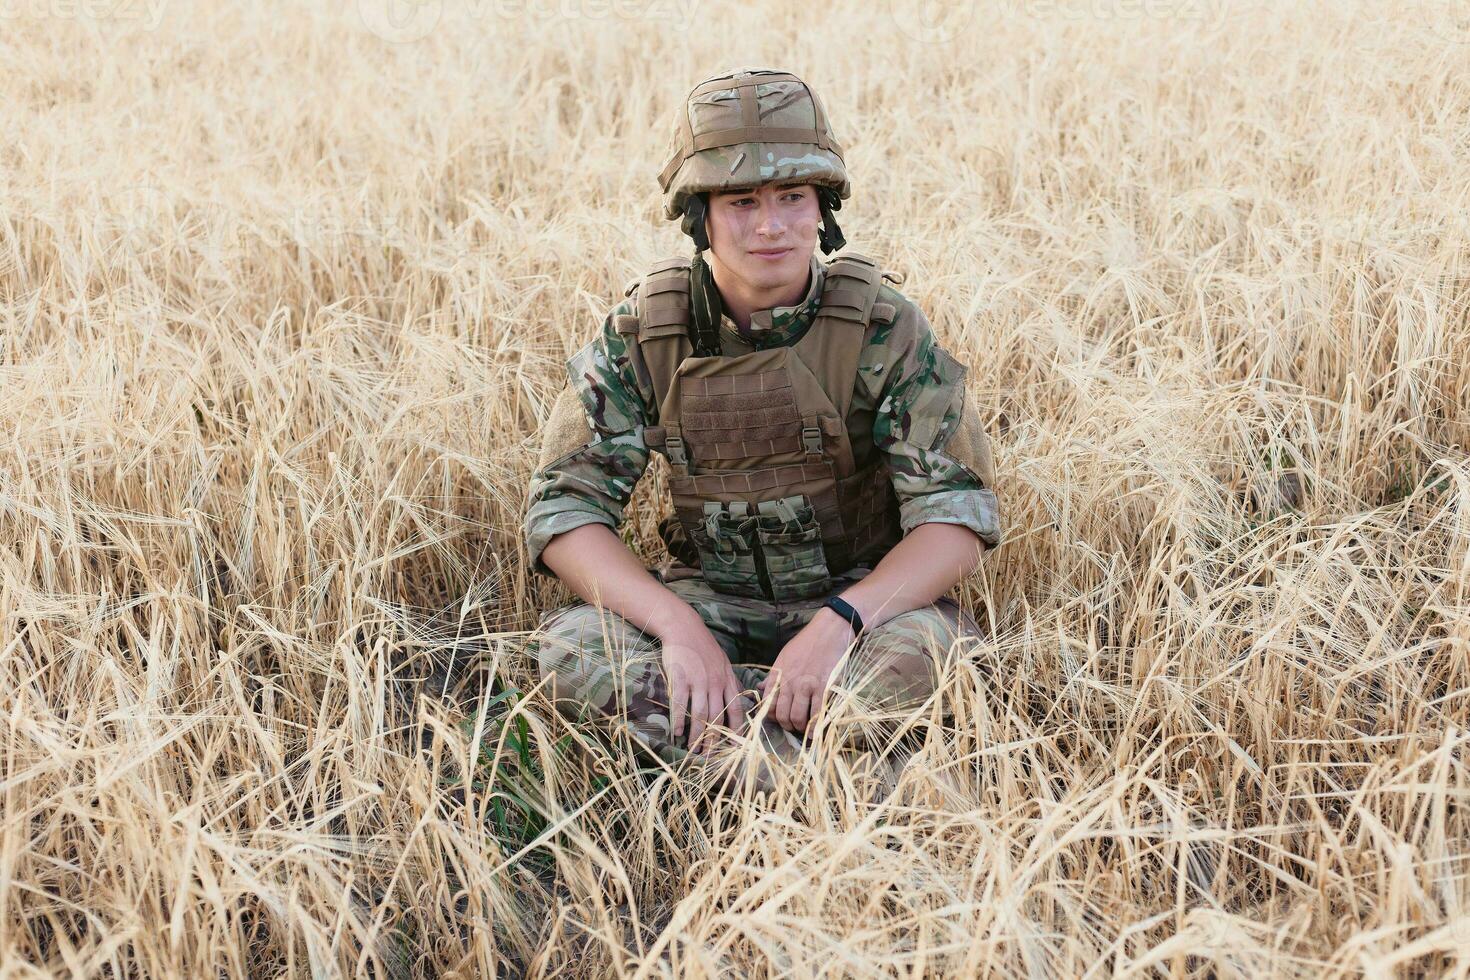 soldado homem em pé contra uma campo foto